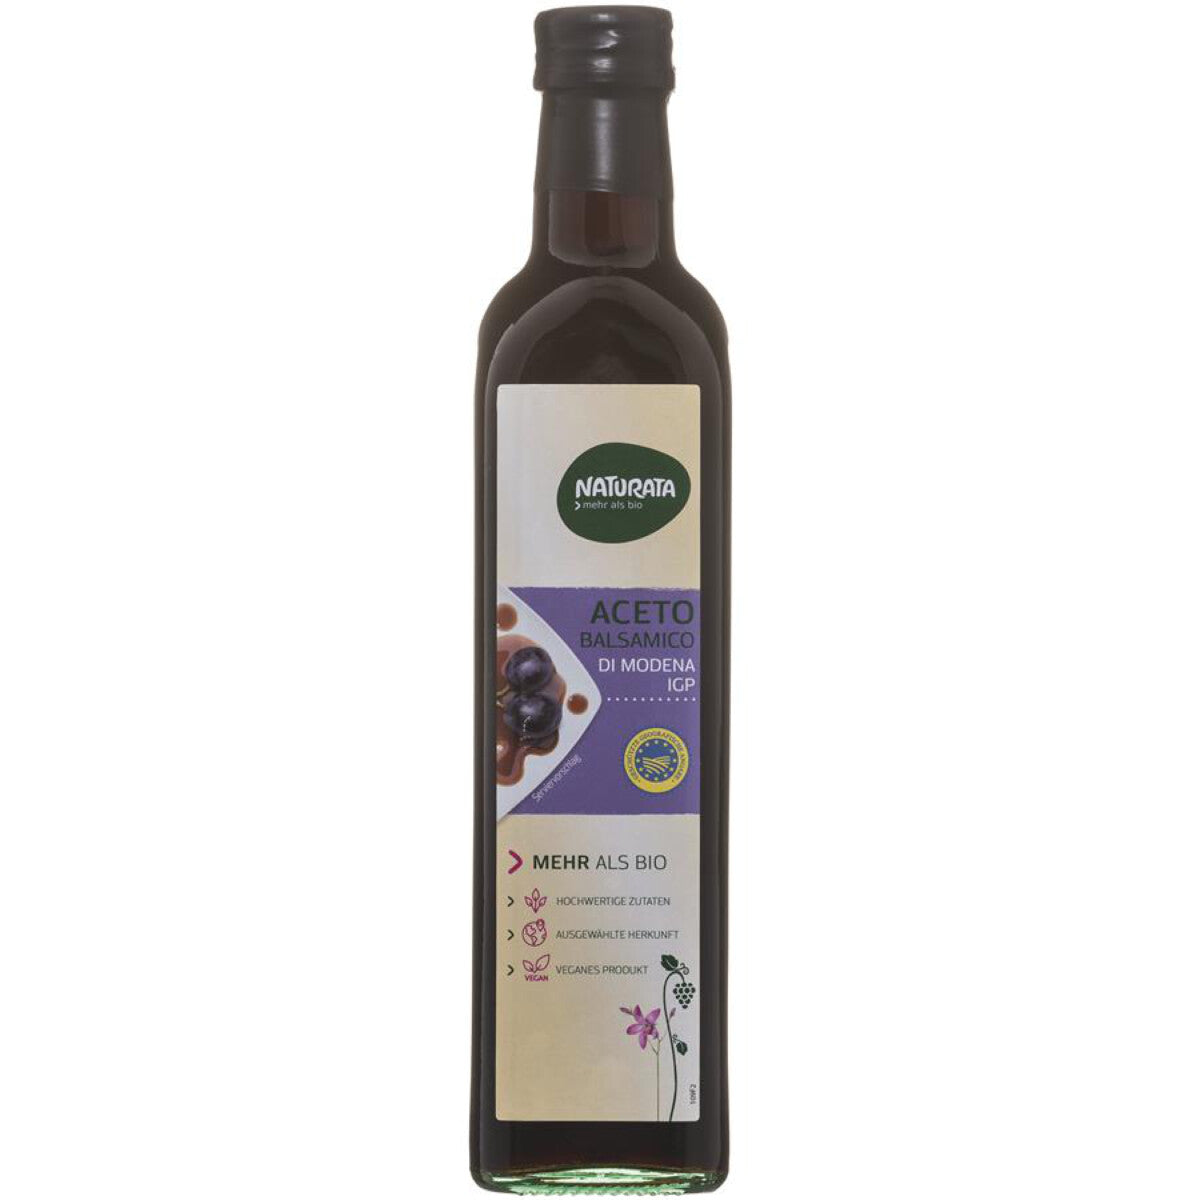 NATURATA Aceto Balsamico di Modena - 500 ml